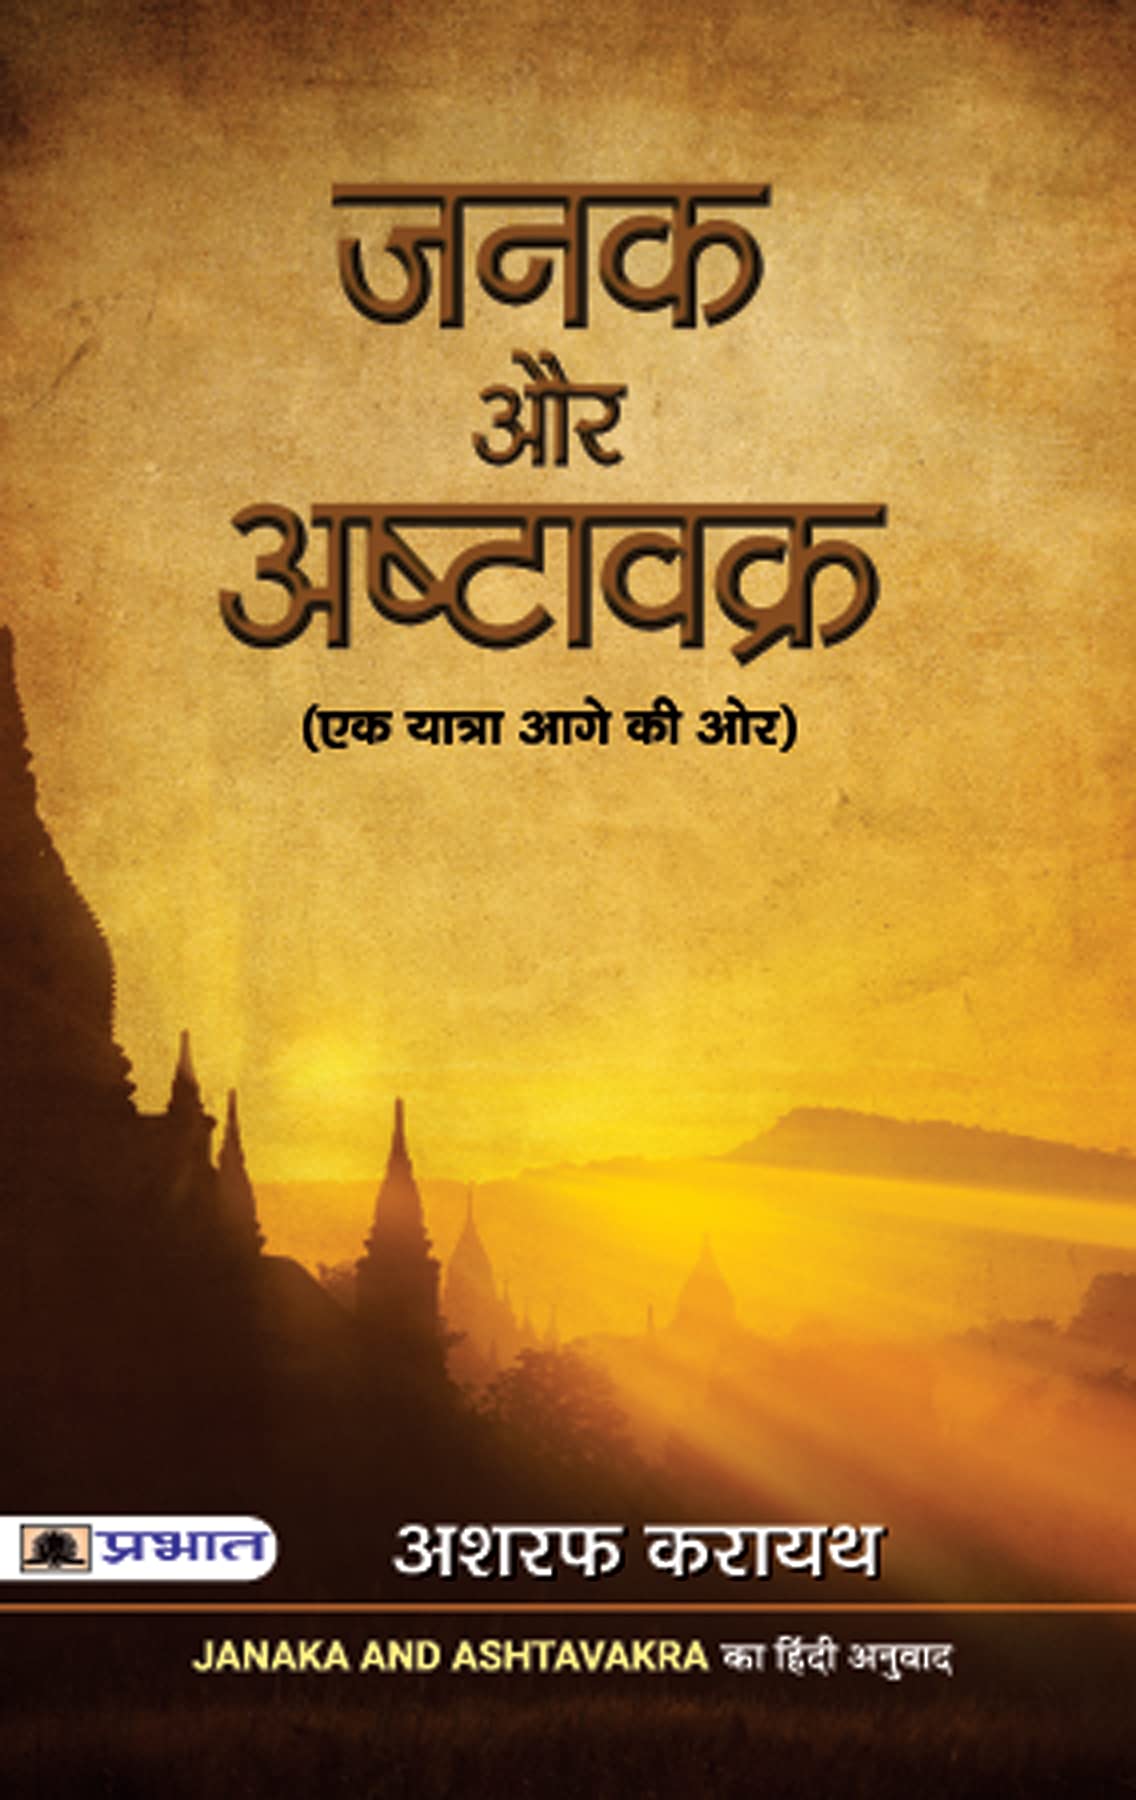 JANAKA AUR ASHTAVAKRA- Hindi Version